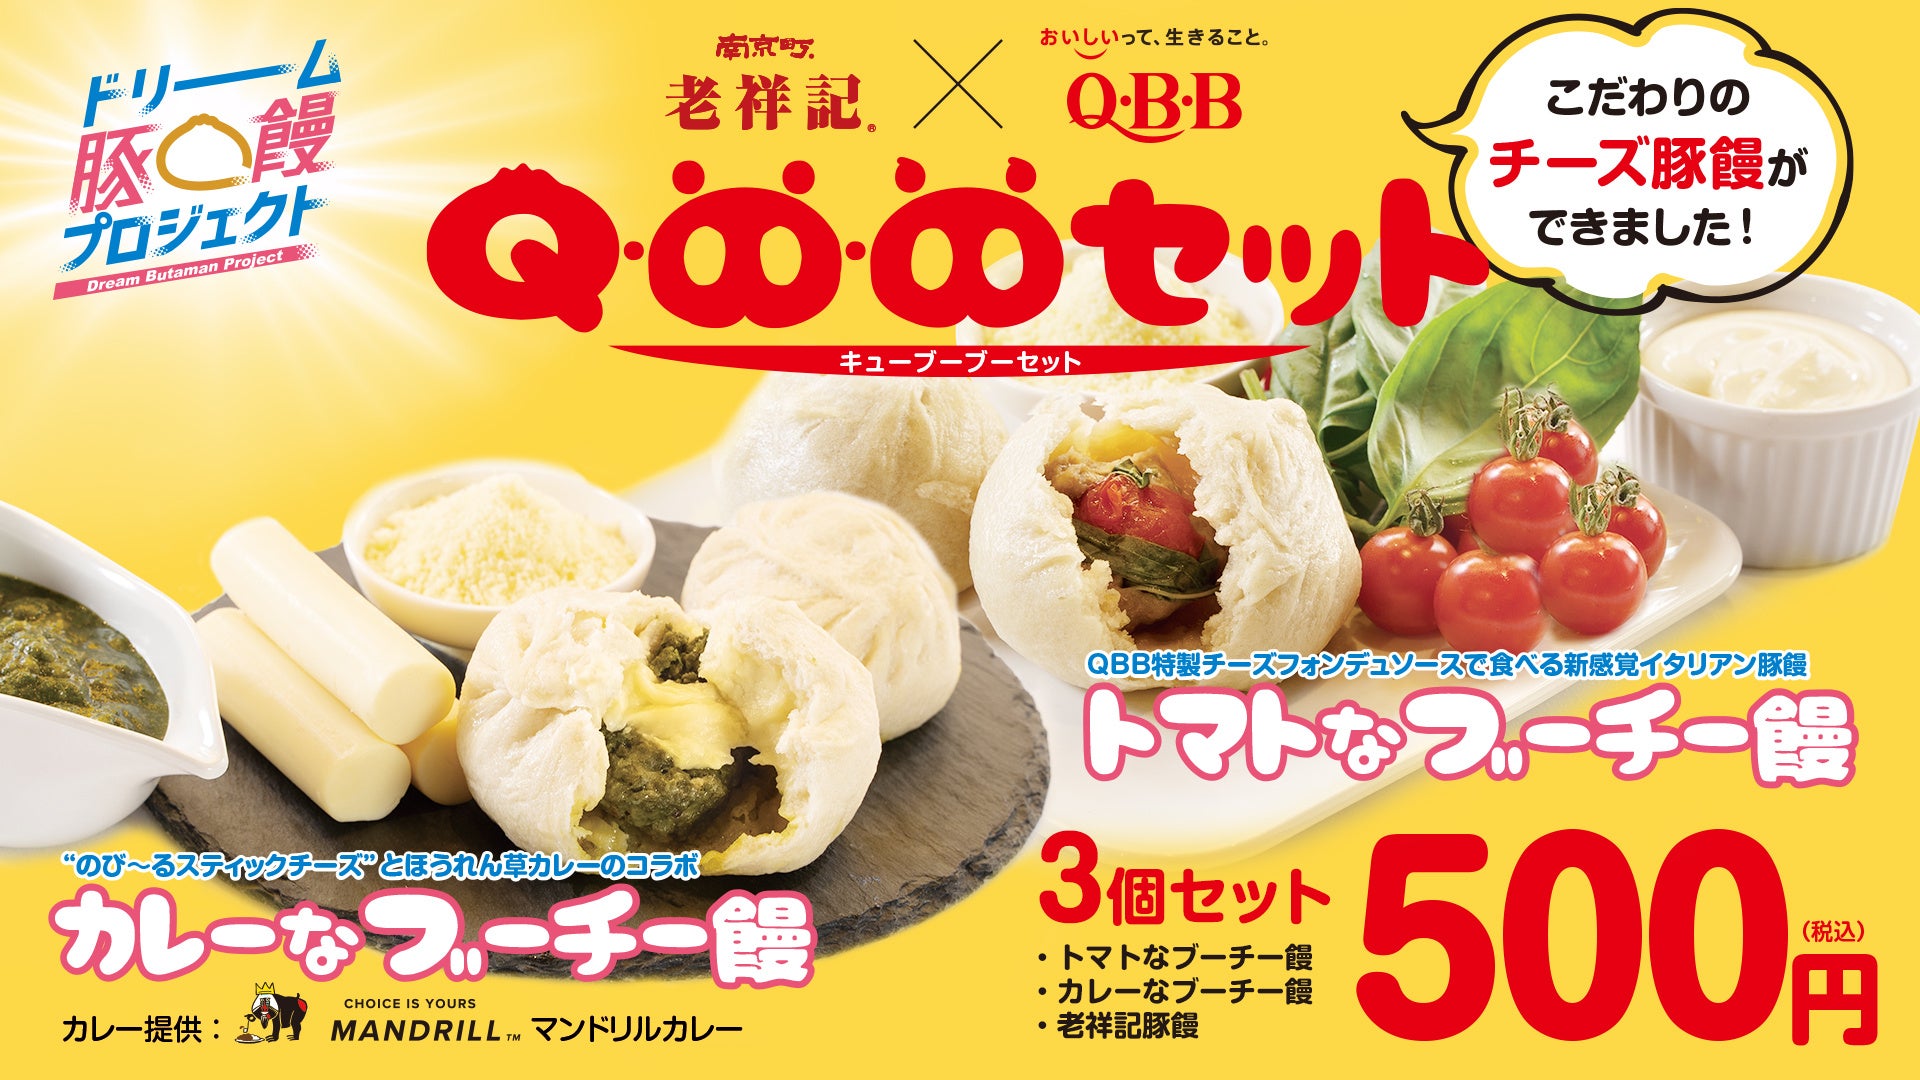 【神戸市】元祖豚饅頭 「老祥記」と、神戸を代表するチーズメーカー QBBでお馴染みの「六甲バター」がコラボレーション! ~豚饅とチーズが満を持して、夢の共演~